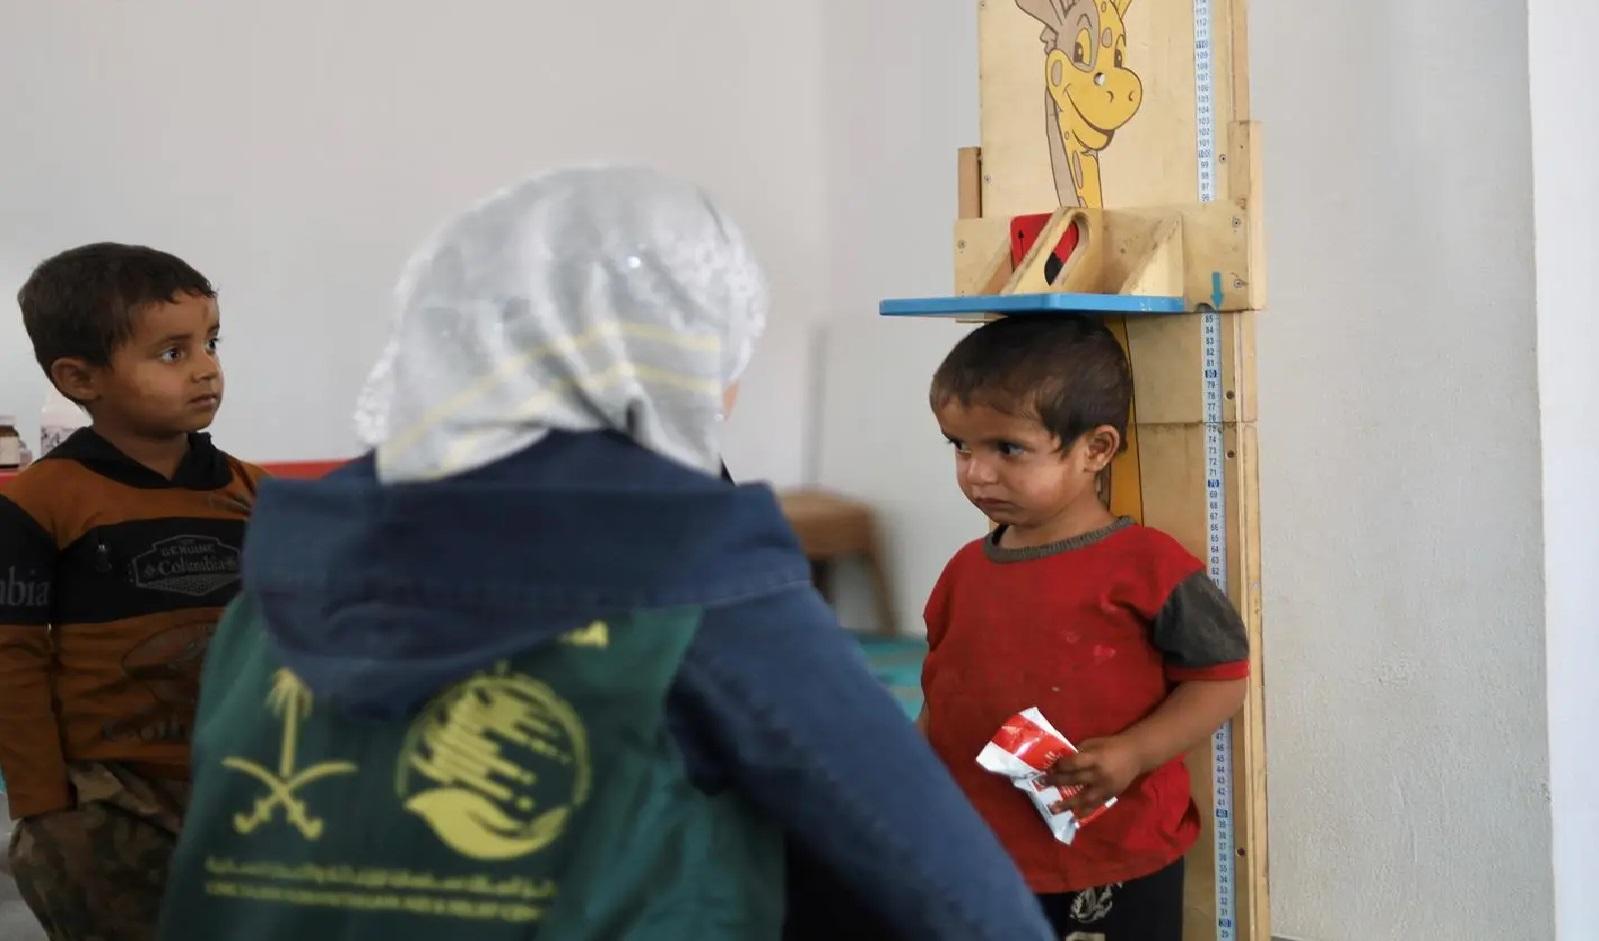 مركز الملك سلمان يقدم خدمات الرعاية الصحية للاجئين السوريين والمجتمع المضيف في لبنان

